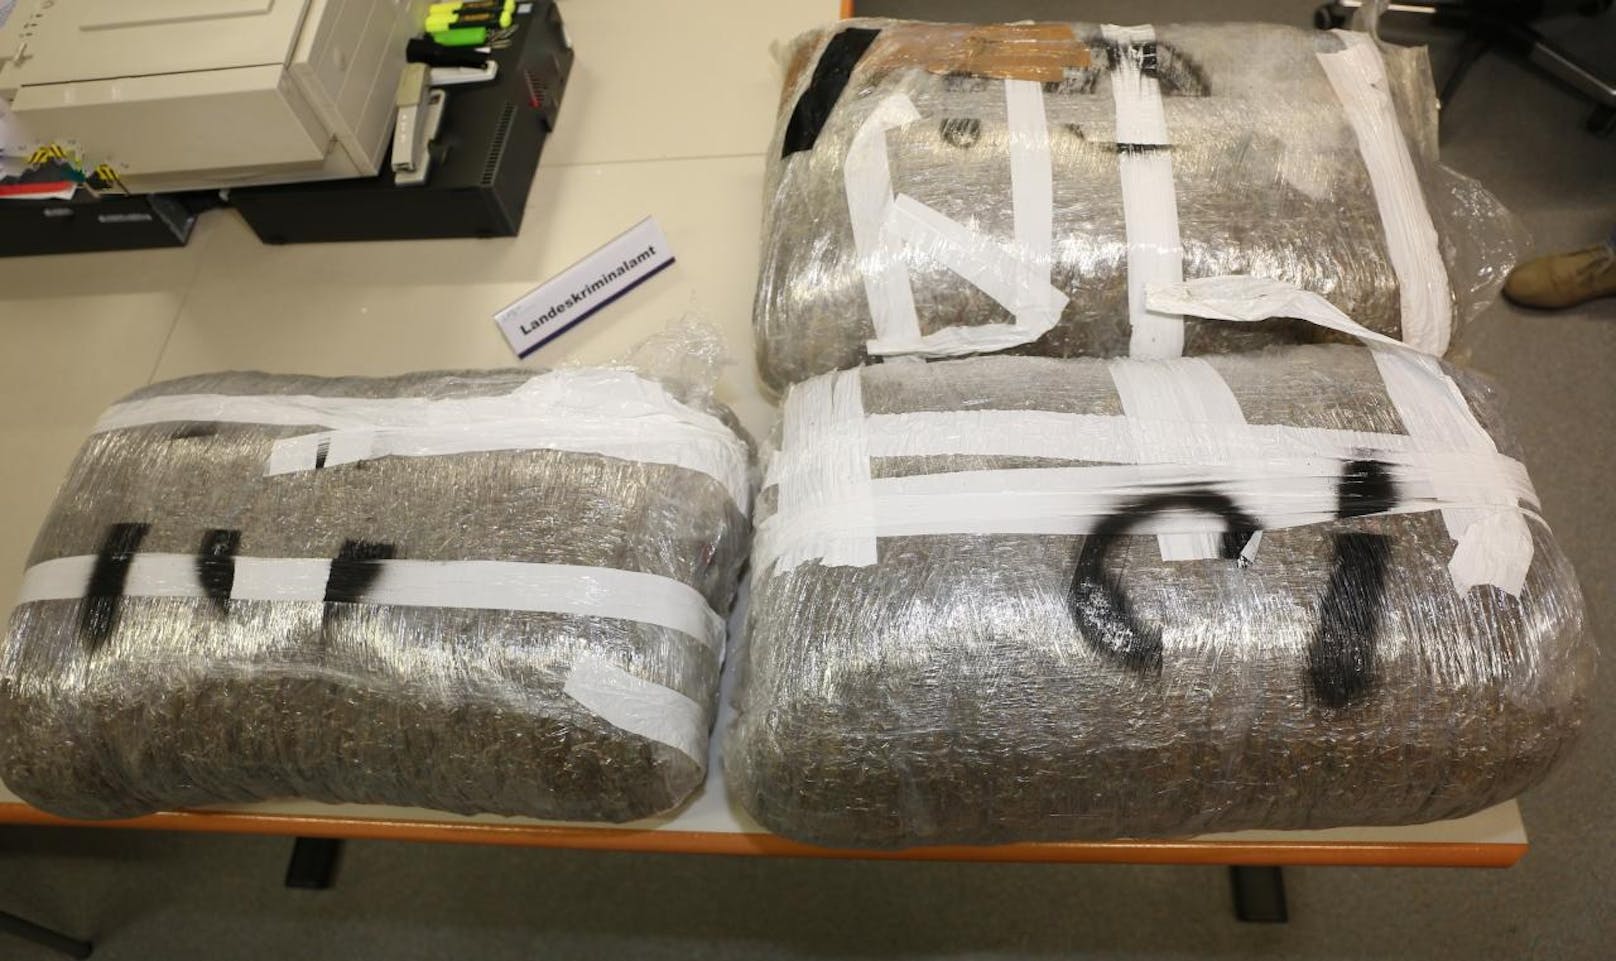 Im Zuge der Kontrolle konnten im Fahrzeuginneren drei verschweißte Pakete mit insgesamt 30 Kilogramm Cannabiskraut gefunden und sichergestellt werden.